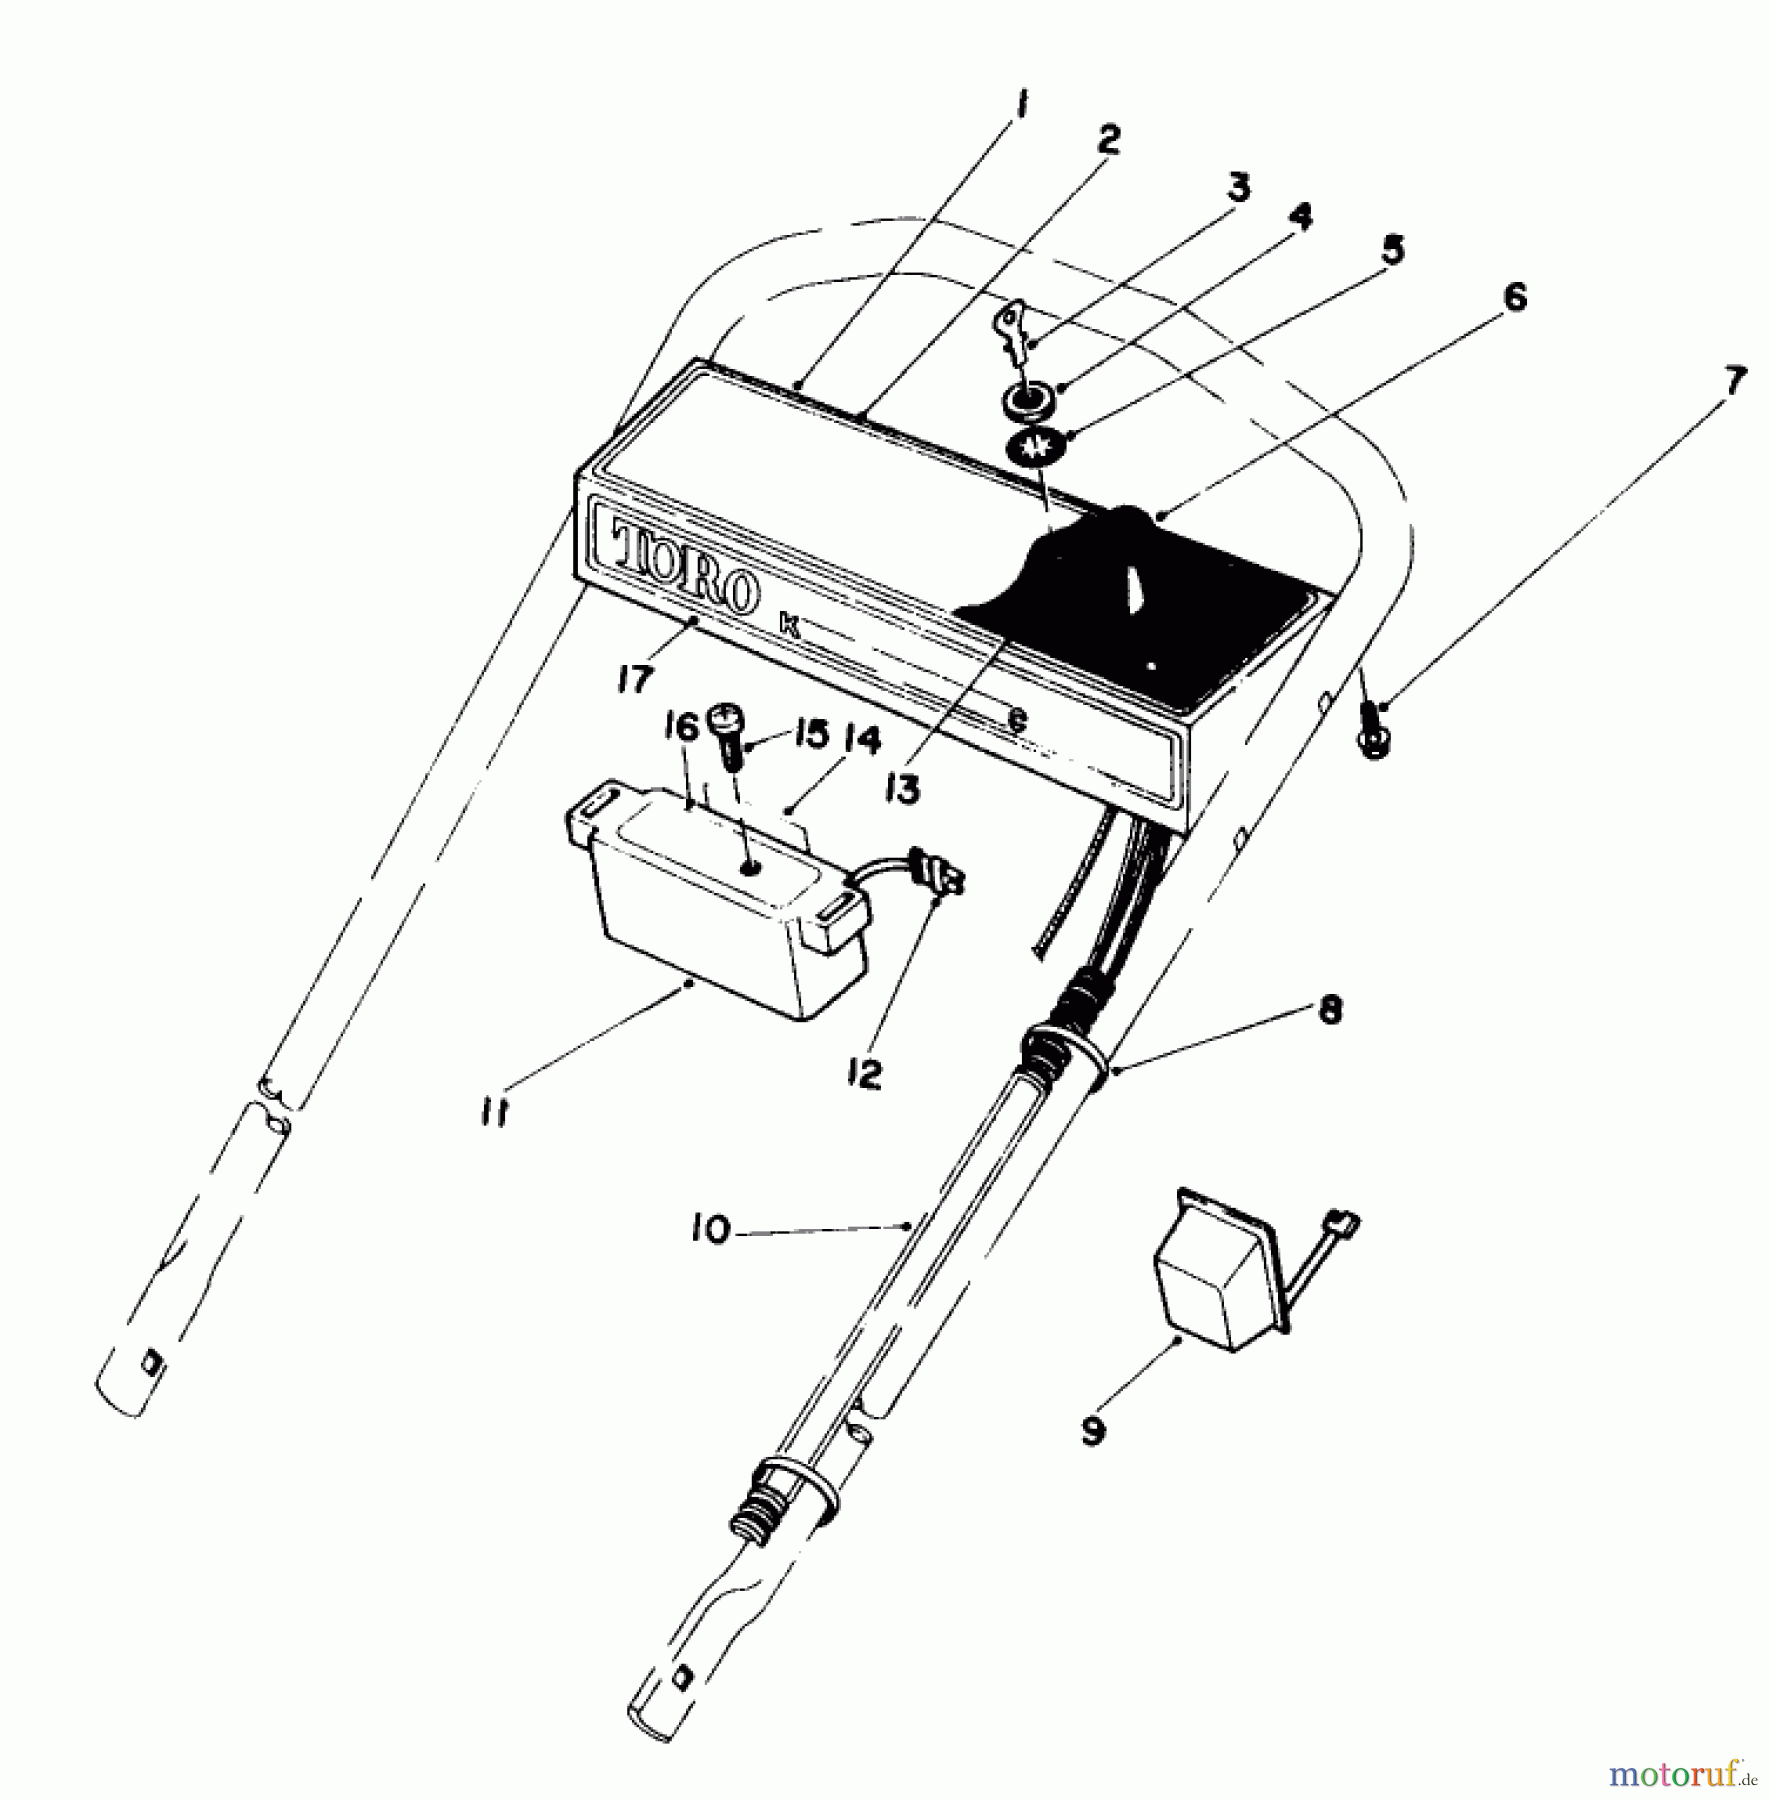  Toro Neu Mowers, Walk-Behind Seite 1 20574 - Toro Lawnmower, 1984 (4000001-4999999) CONTROL PANEL ASSEMBLY